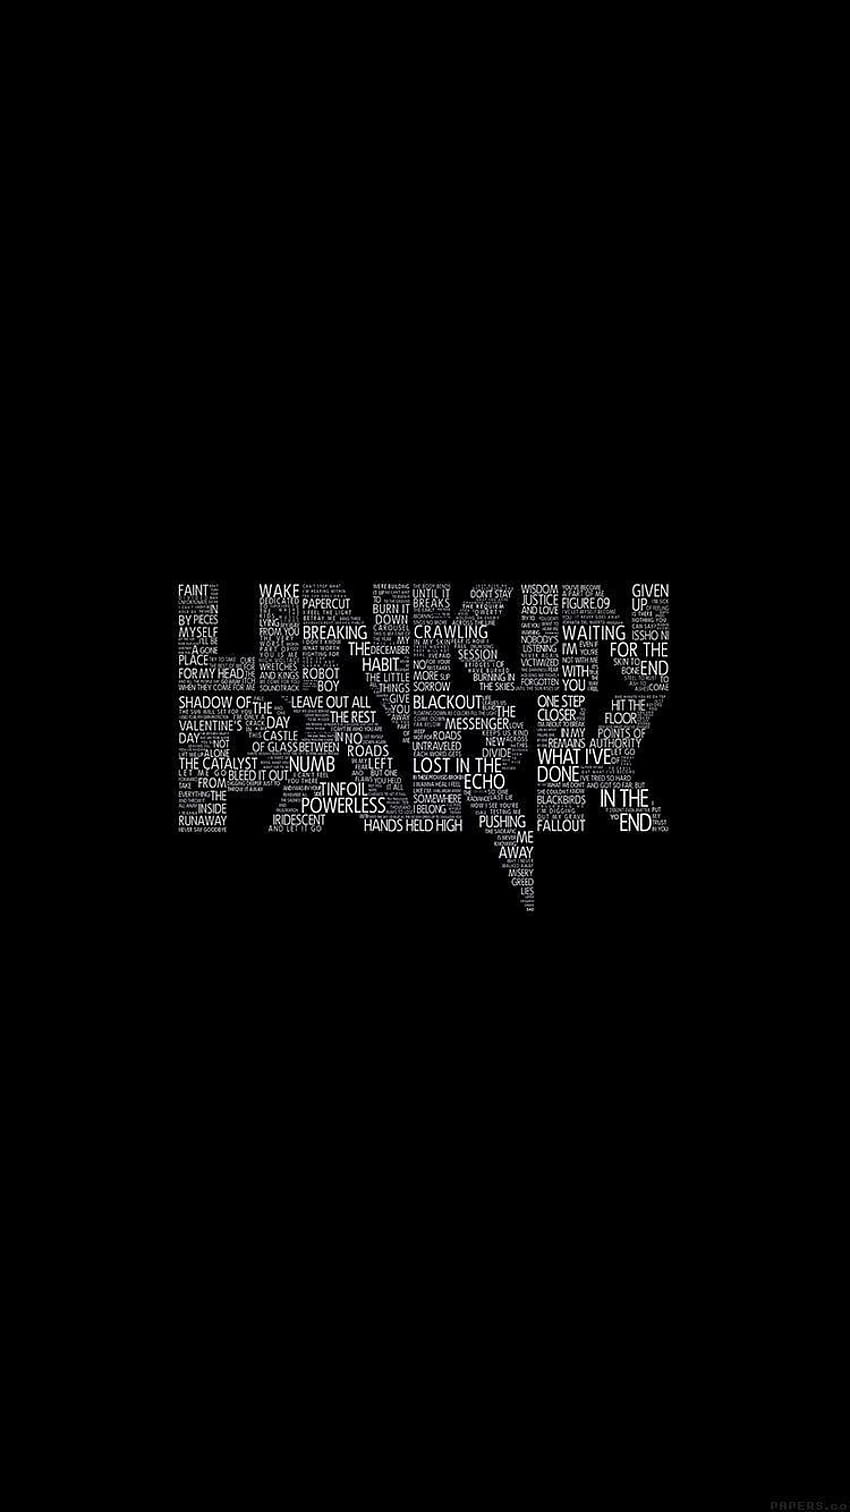 LINKIN PARK DARK LOGO MUSIK IPHONE, logo linkin park 2017 wallpaper ponsel HD